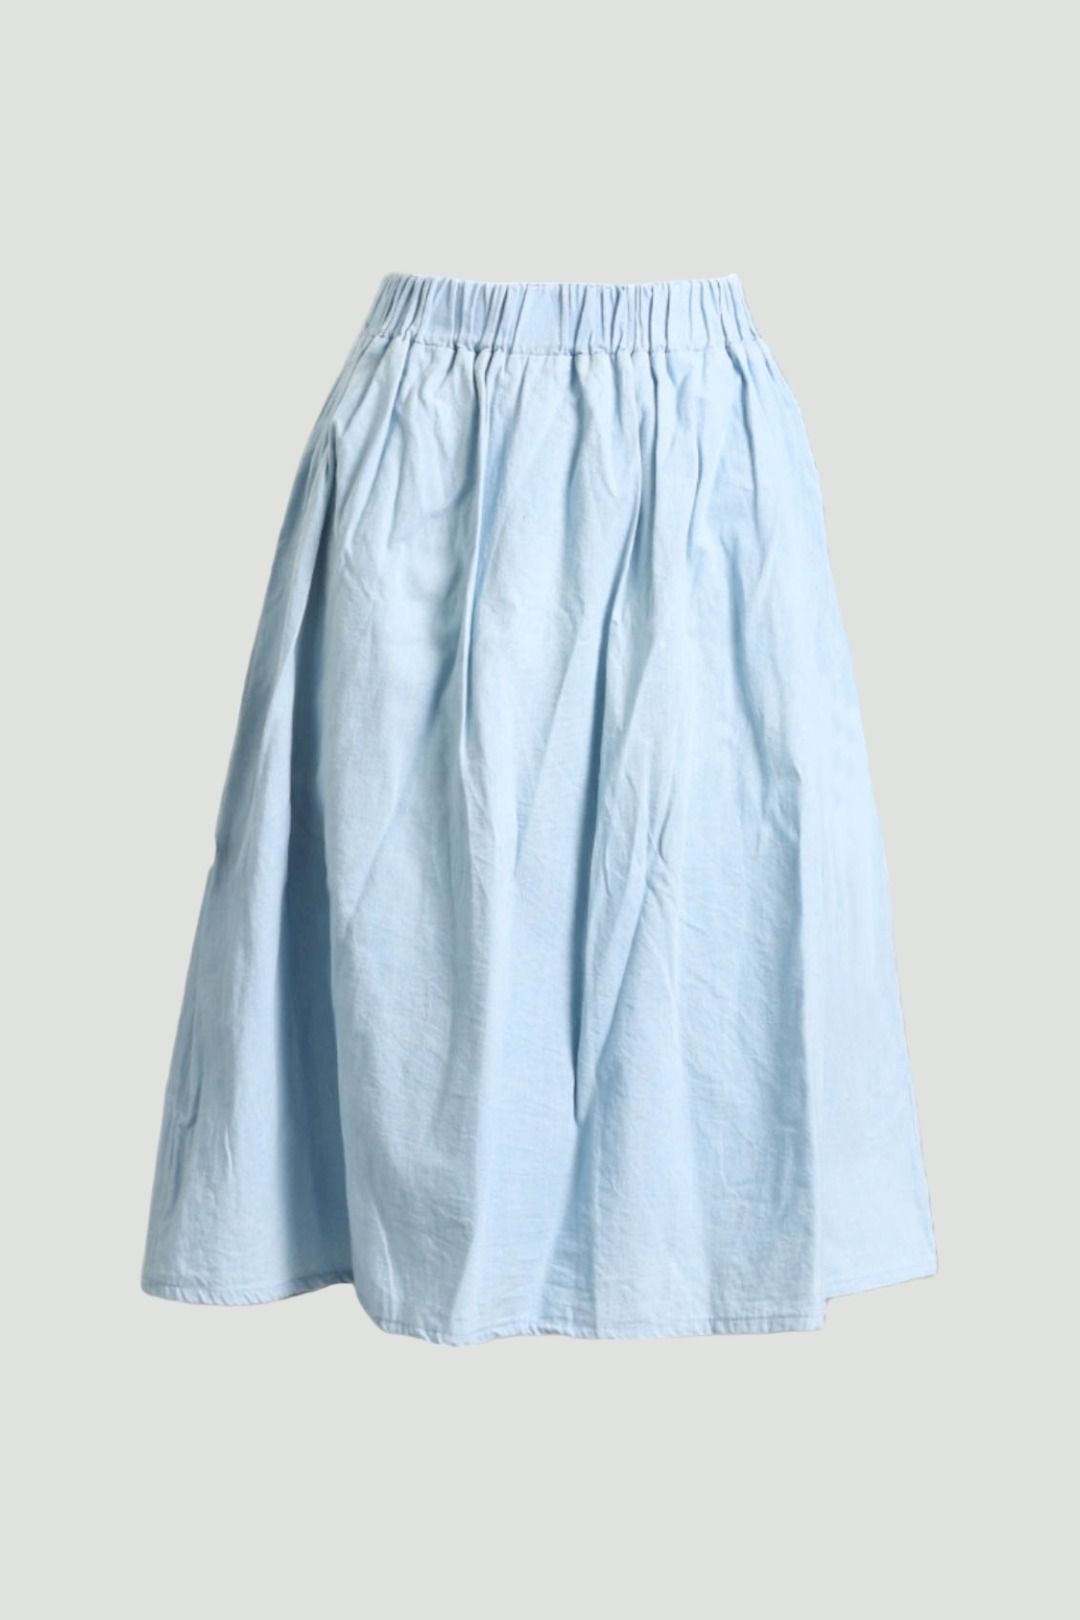 Gathered Knee Length Skirt in Blue